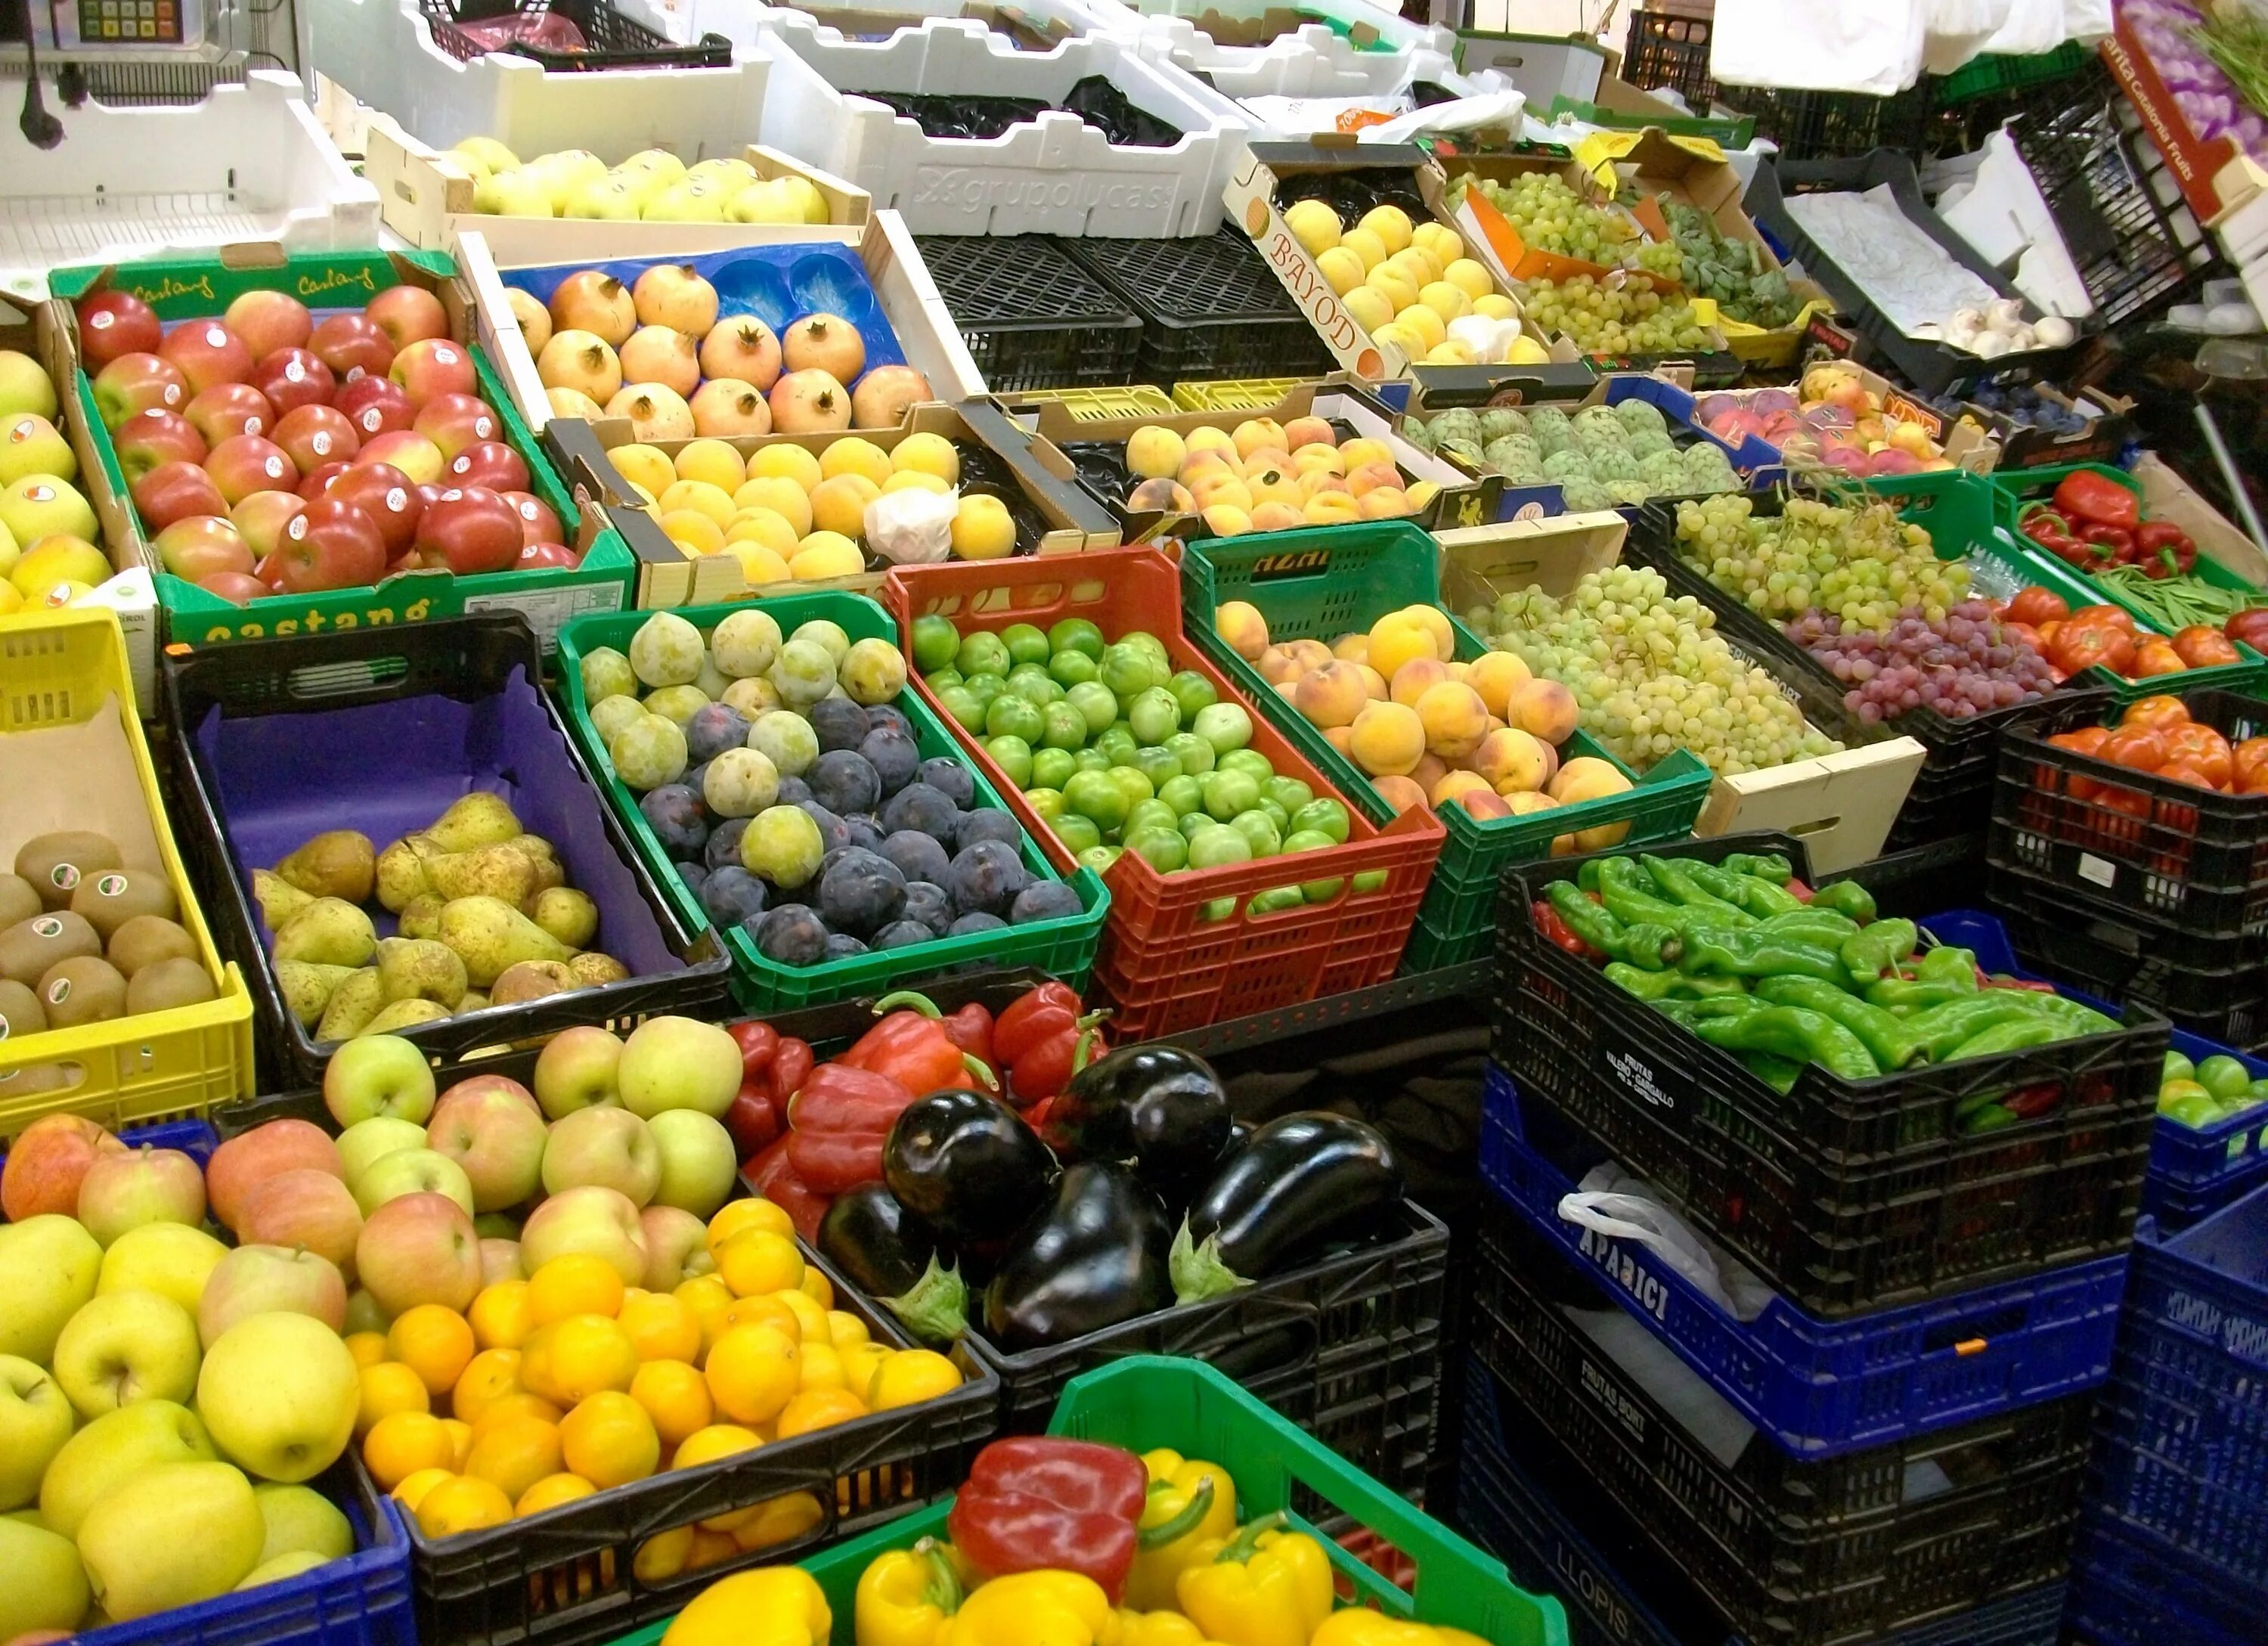 Разные цвета фруктов говорят о том что. Выкладка экзотических фруктов. Коробка для фруктов с рынка. Витрина летнего рынка овощей и фруктов. Ящики с фруктами на рынке.